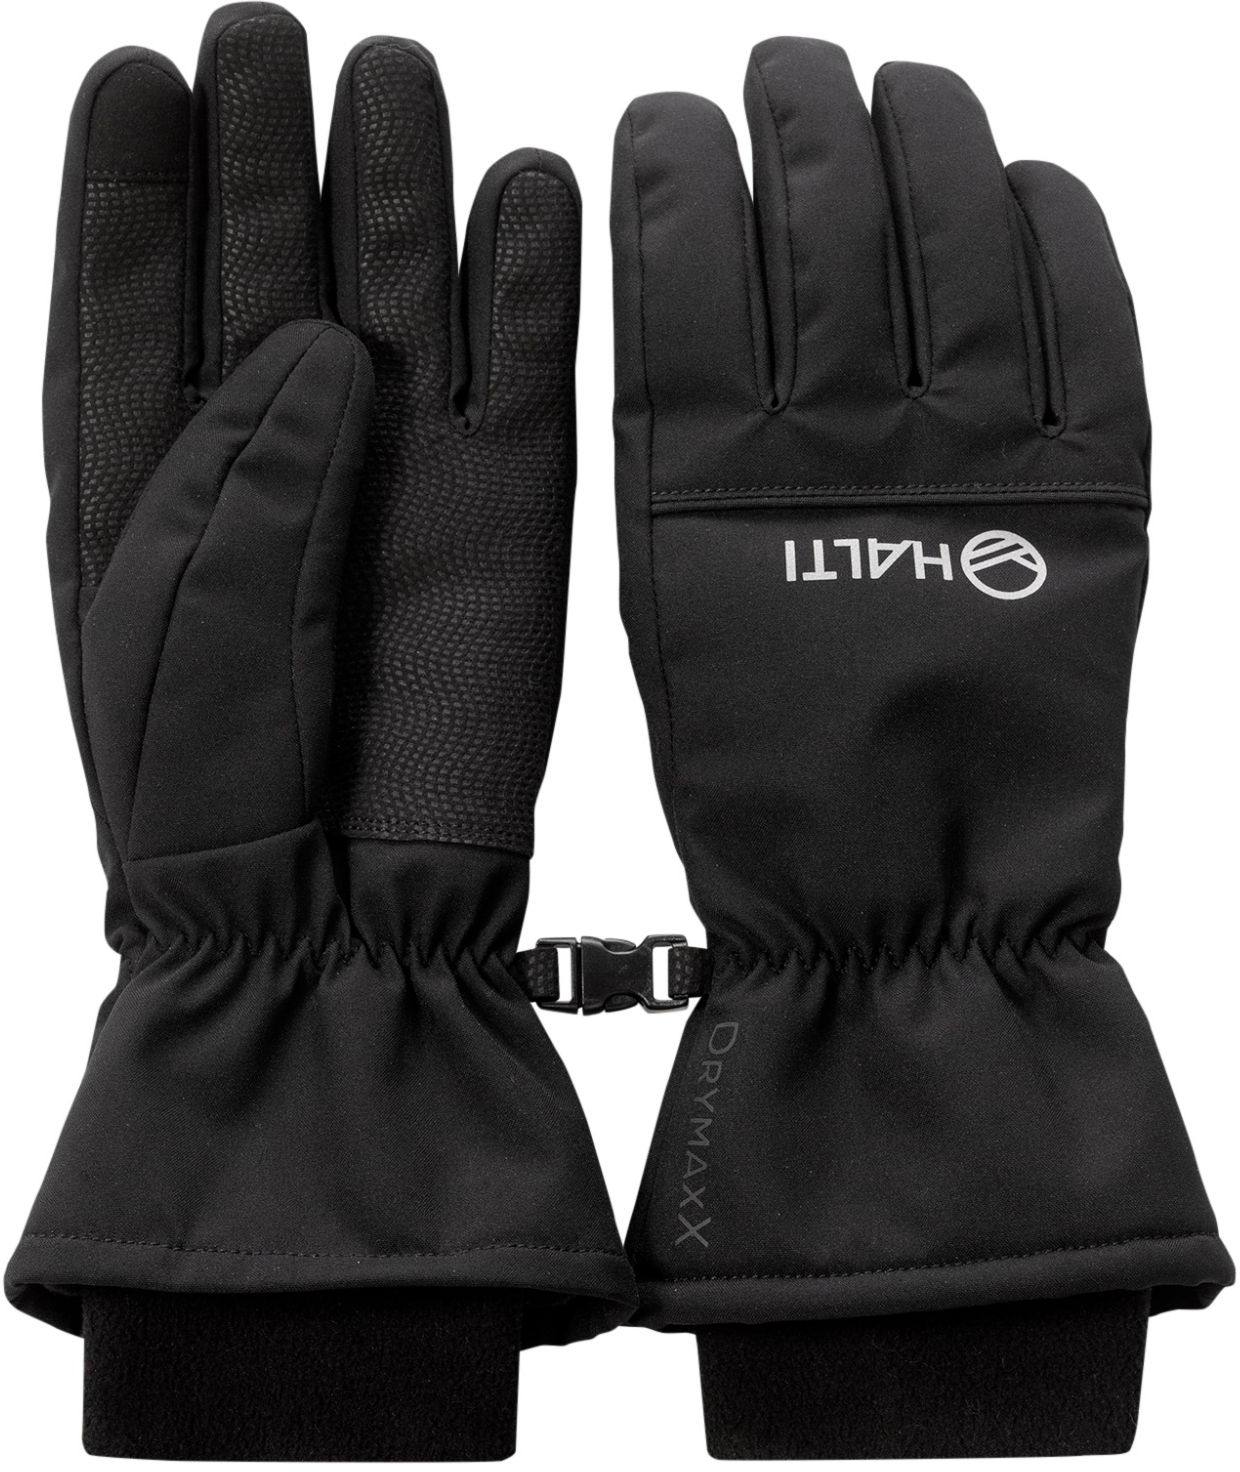 Halti Alium DX Gloves Black M